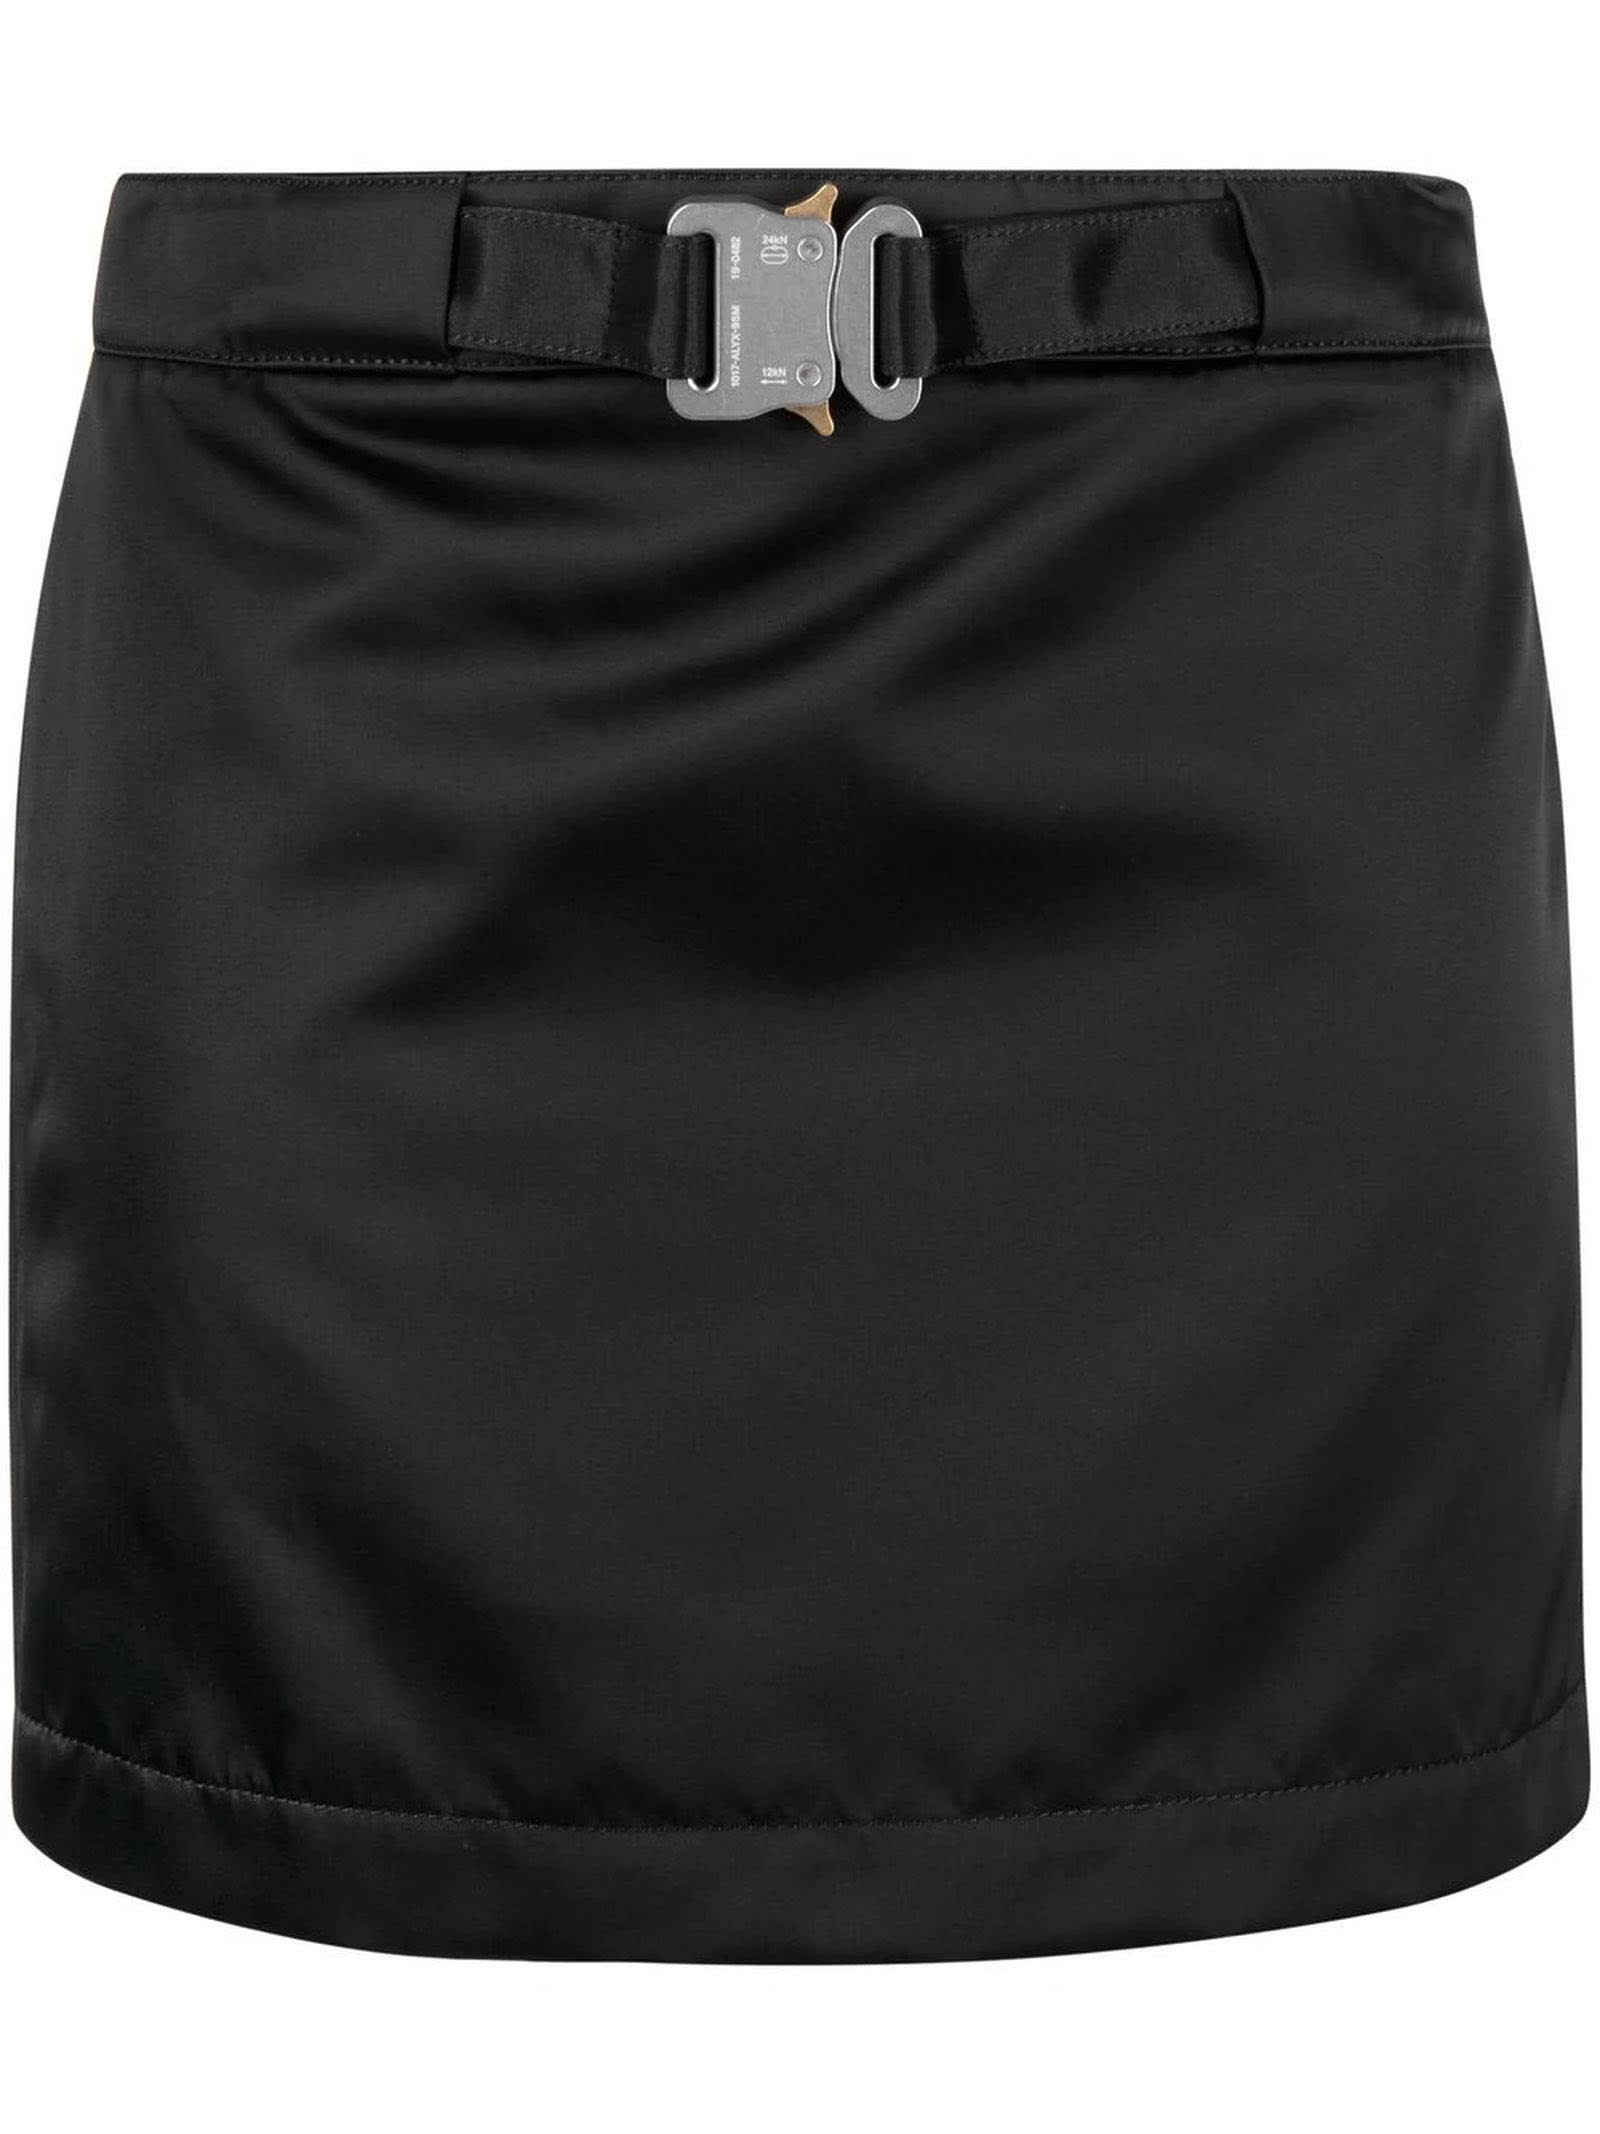 1017 ALYX 9SM Black Mid Length Skirt